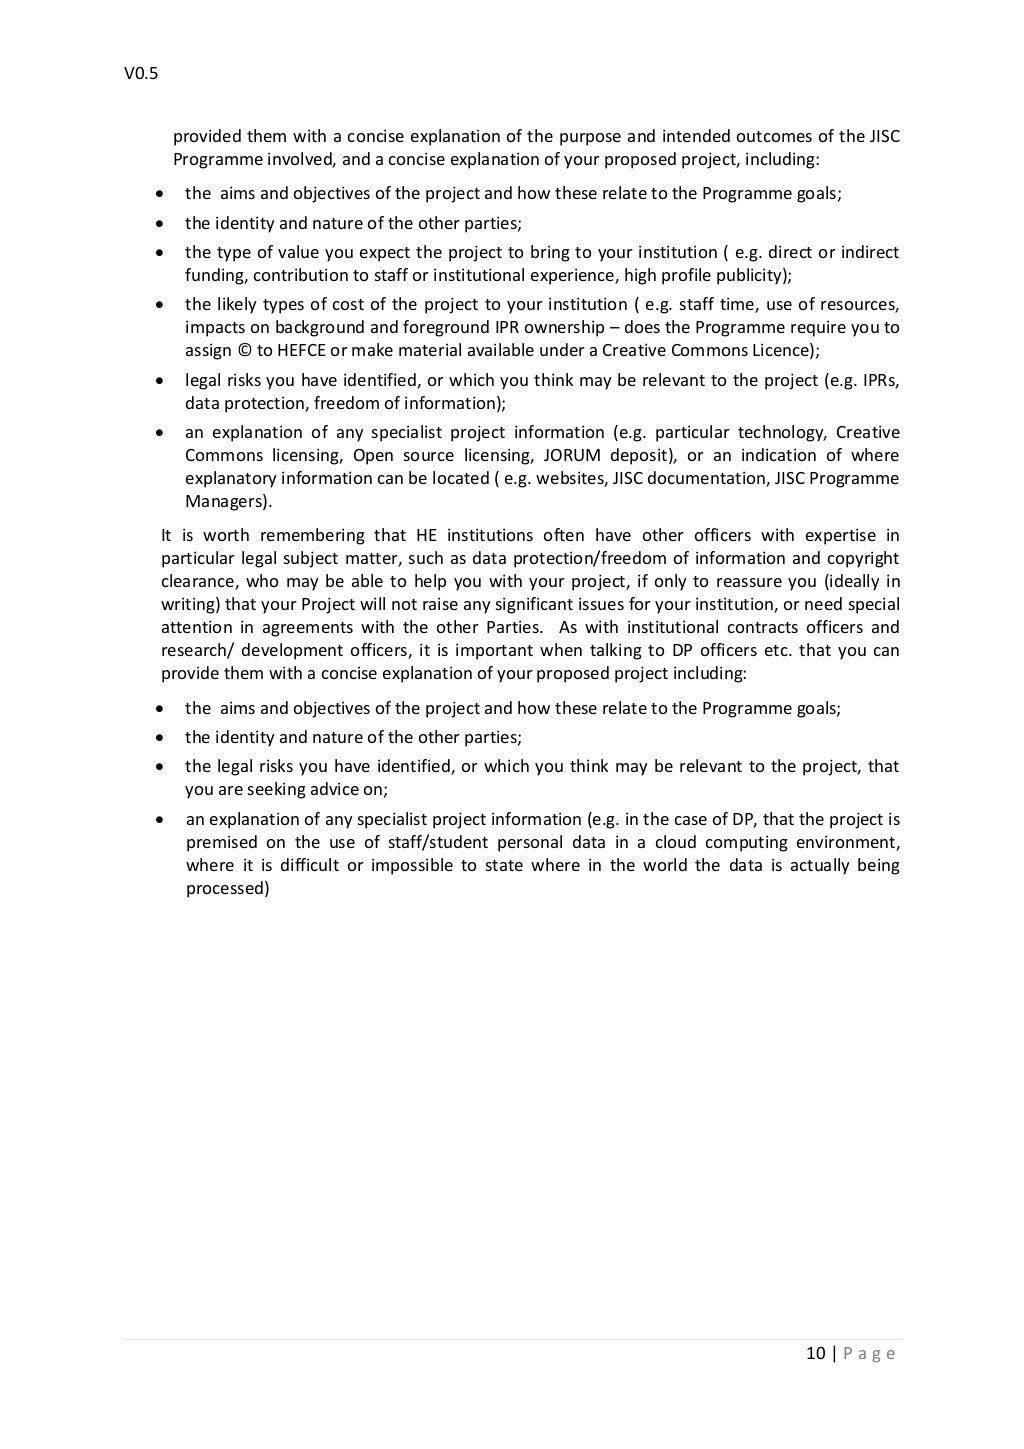 consortium-agreement-template